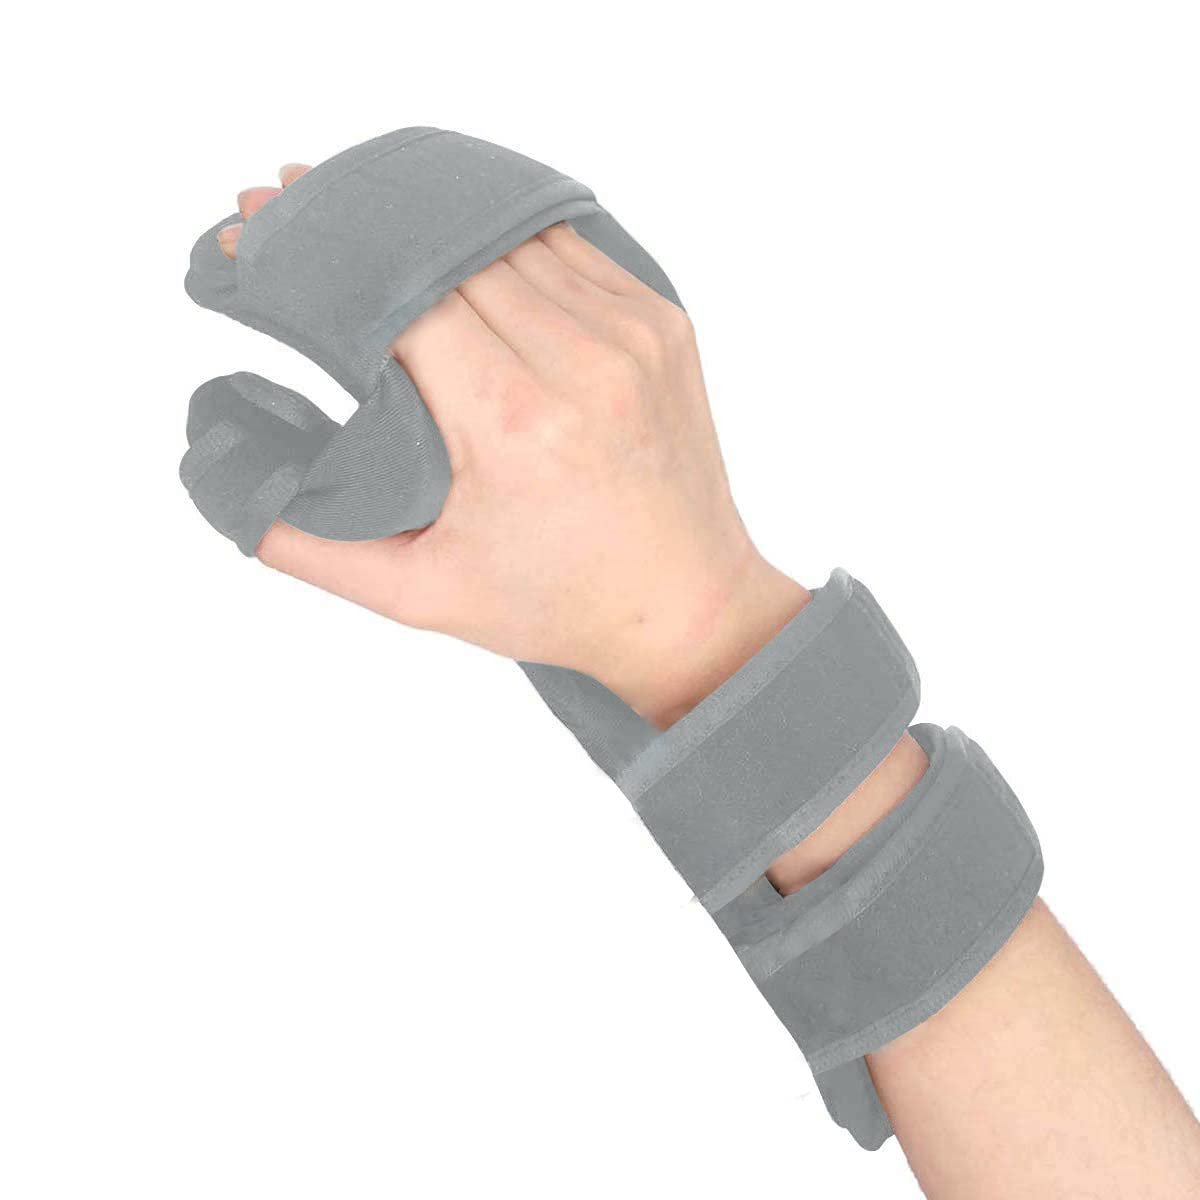 Fix Comfort Wrist Brace